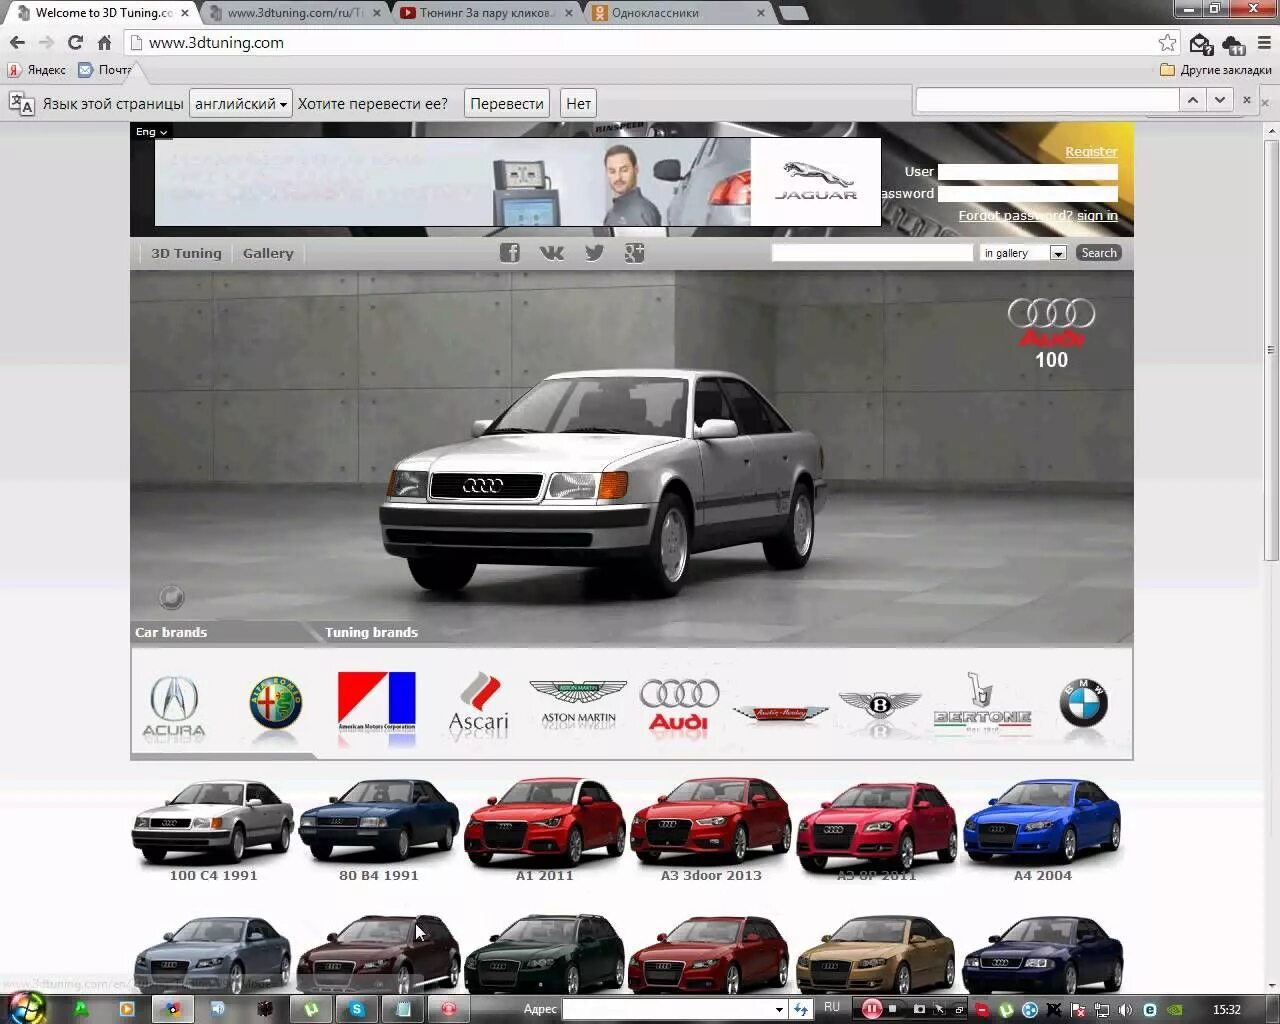 Program car. Виртуальный тюнинг автомобилей. Программа для тюнинга автомобилей. Приложение для тюнинга автомобилей. Программа виртуального тюнинга.